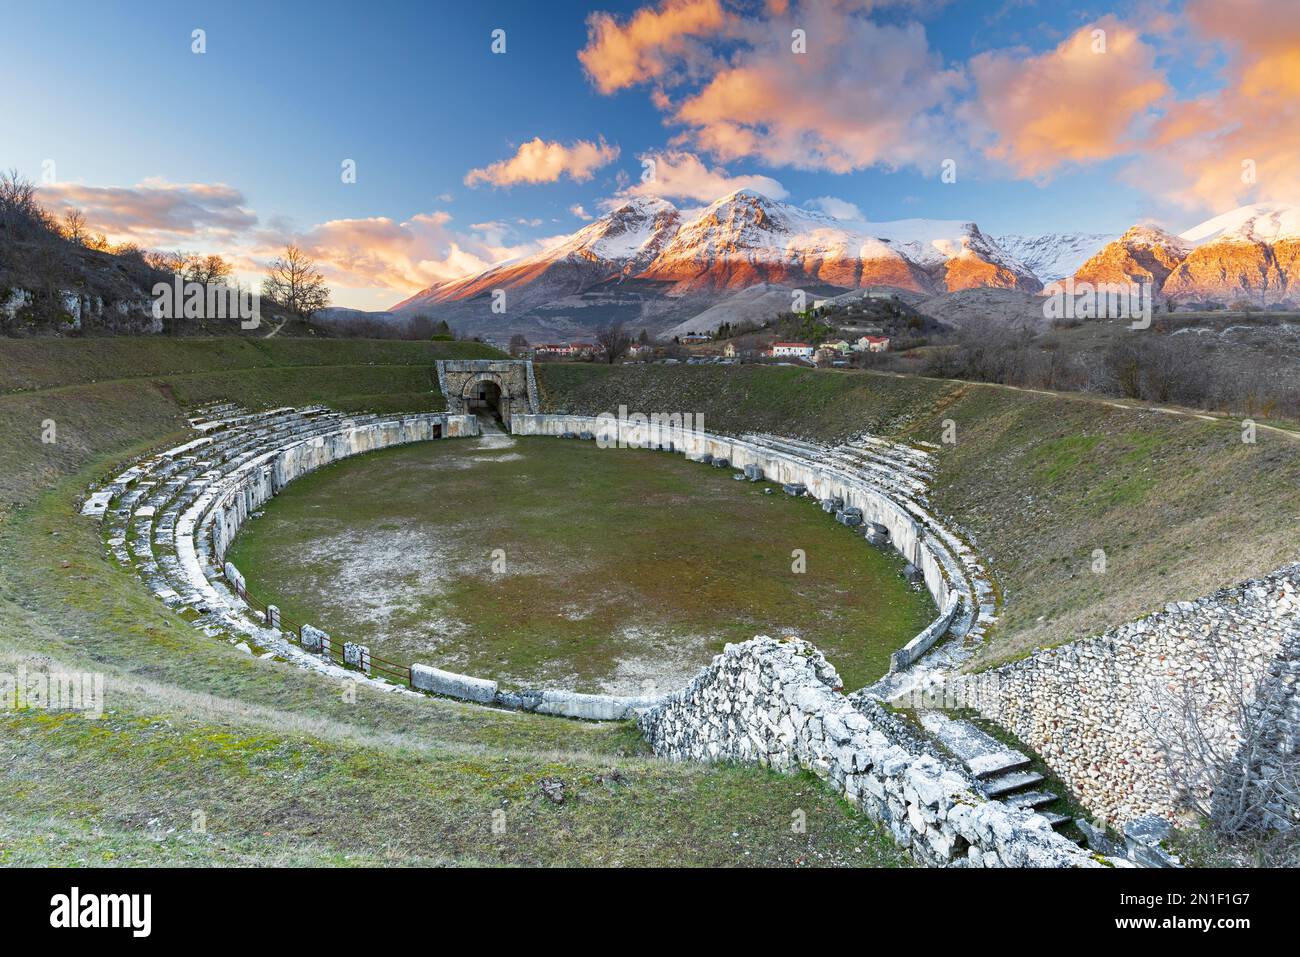 Vista dell'anfiteatro romano e delle vette innevate al tramonto, Alba Fucens, provincia dell'Aquila, Appennini, Abruzzo, Italia, Europa Foto Stock